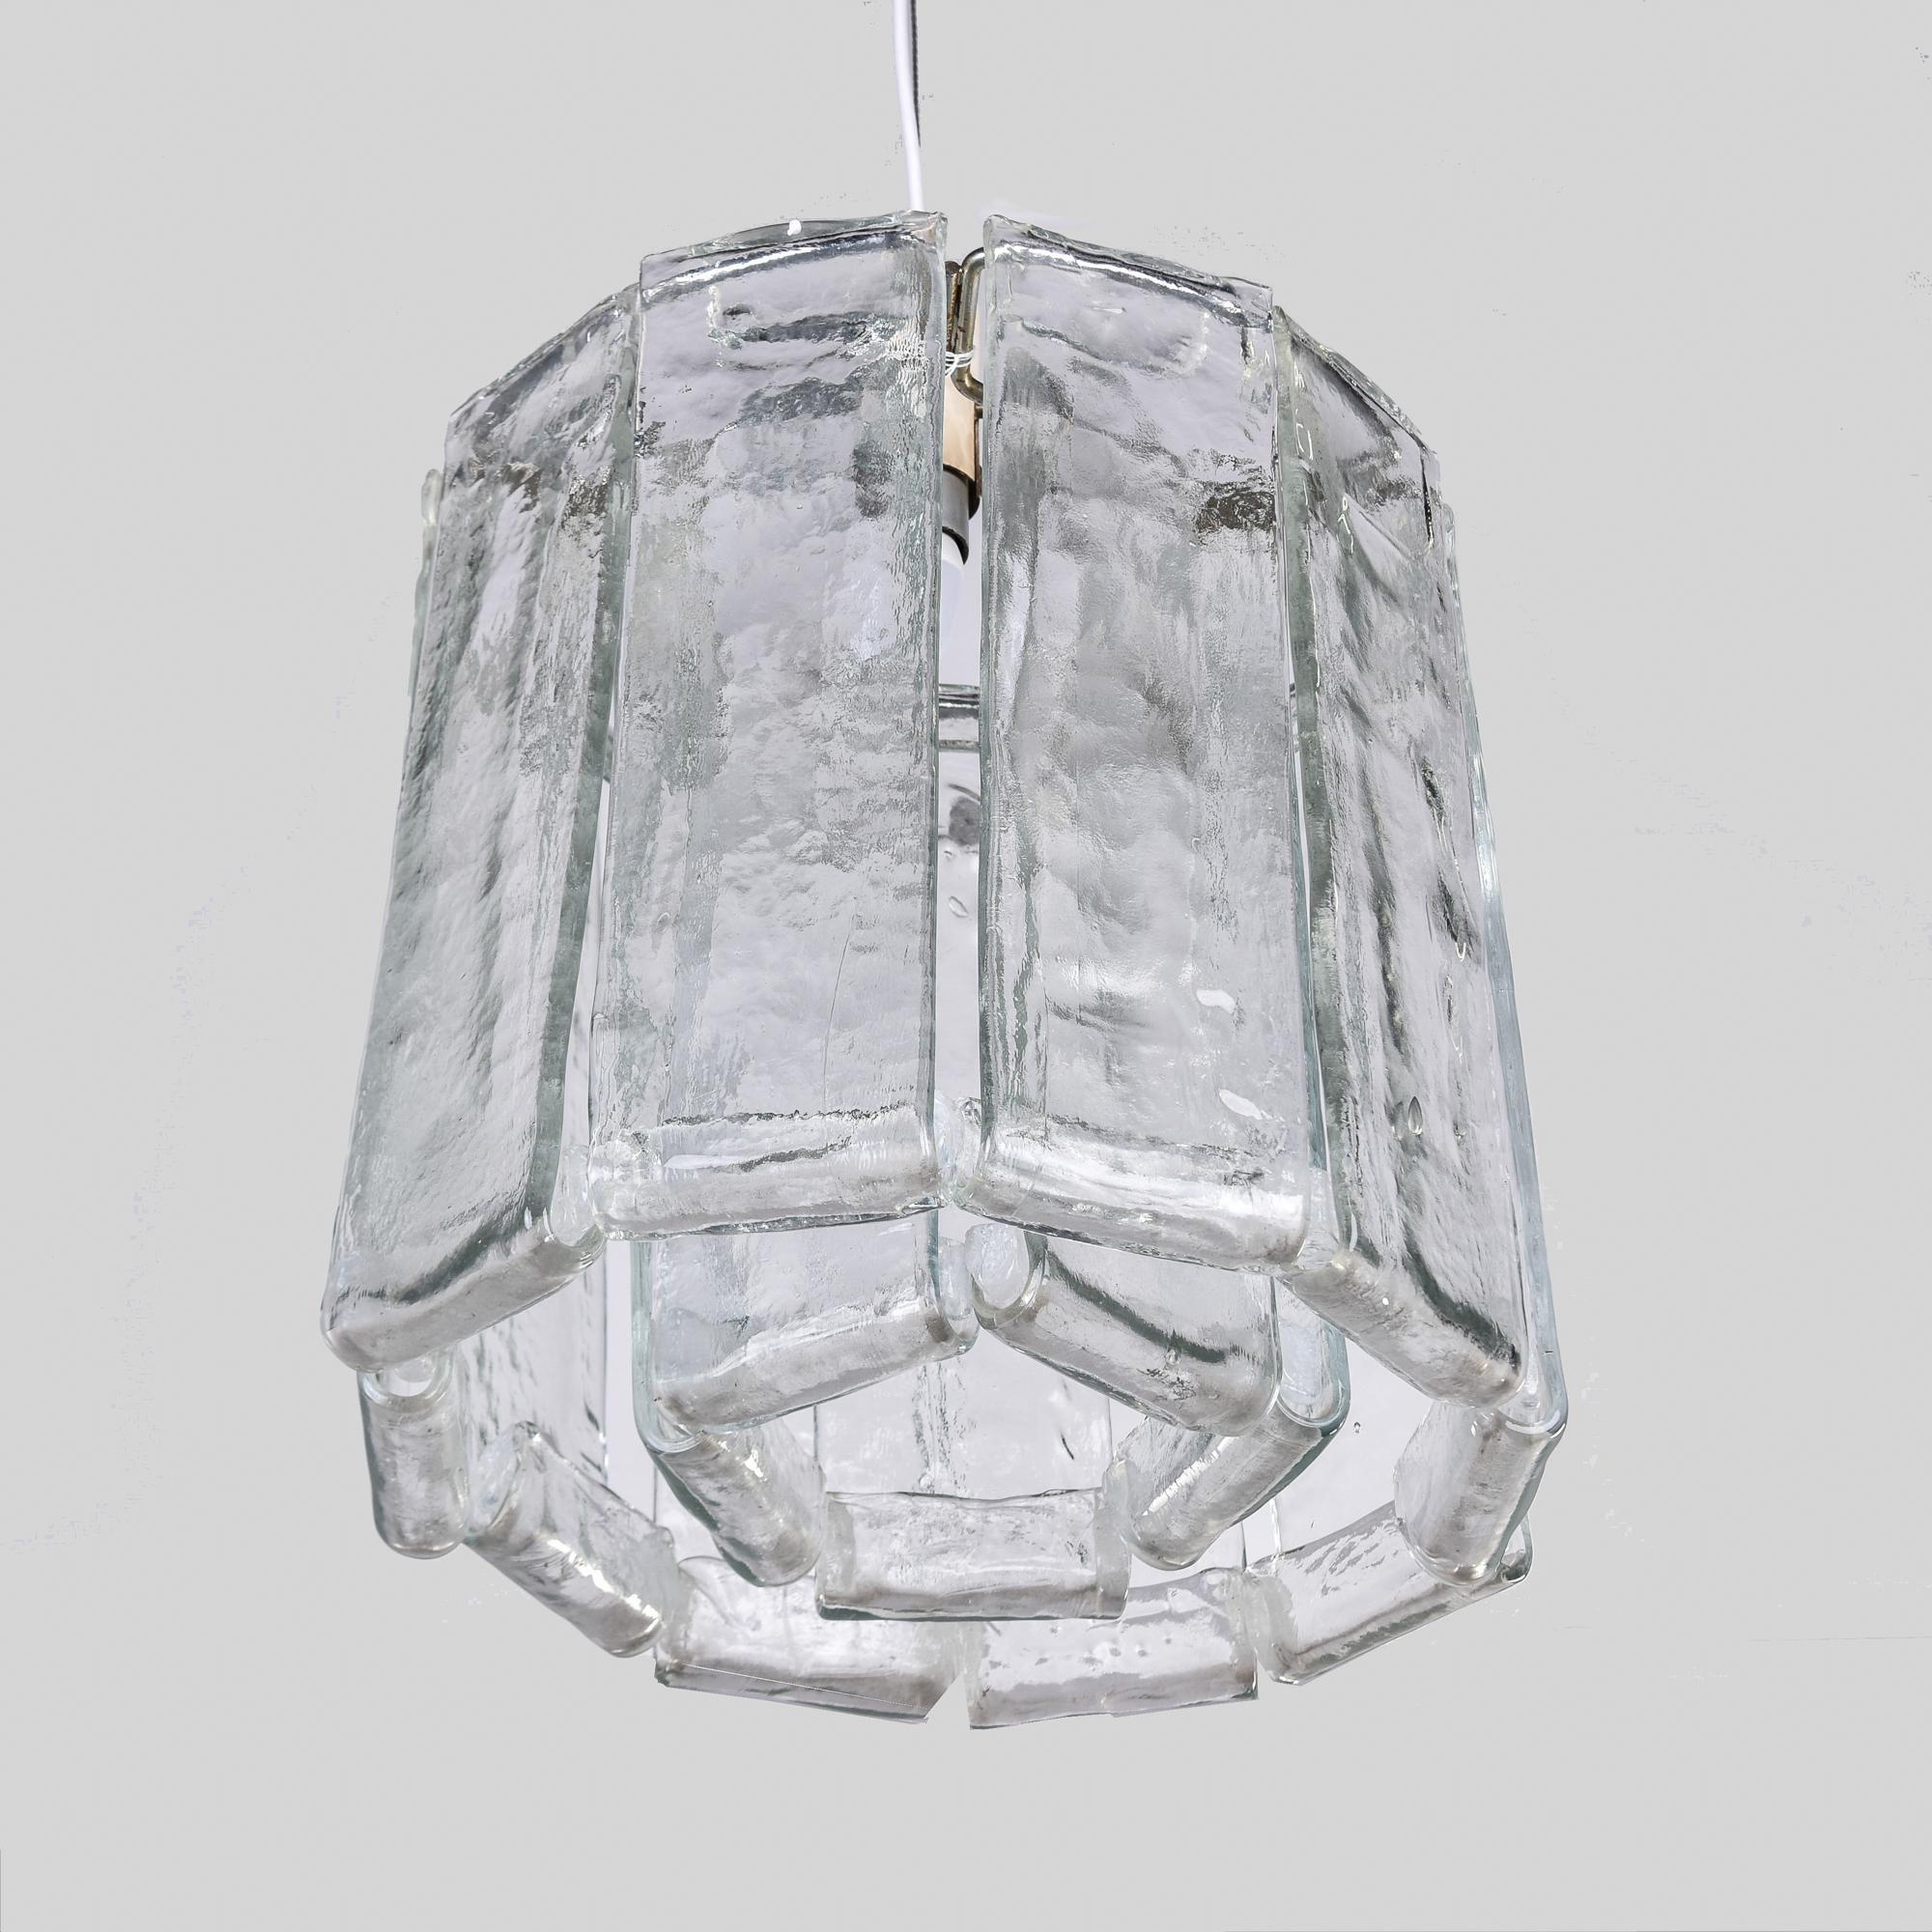 Trouvé en Italie, ce luminaire des années 1960 présente deux niveaux de pendentifs suspendus en verre soufflé transparent et est attribué à Barovier. Ce luminaire est doté d'une seule douille de taille standard au centre. Tout le câblage a été mis à